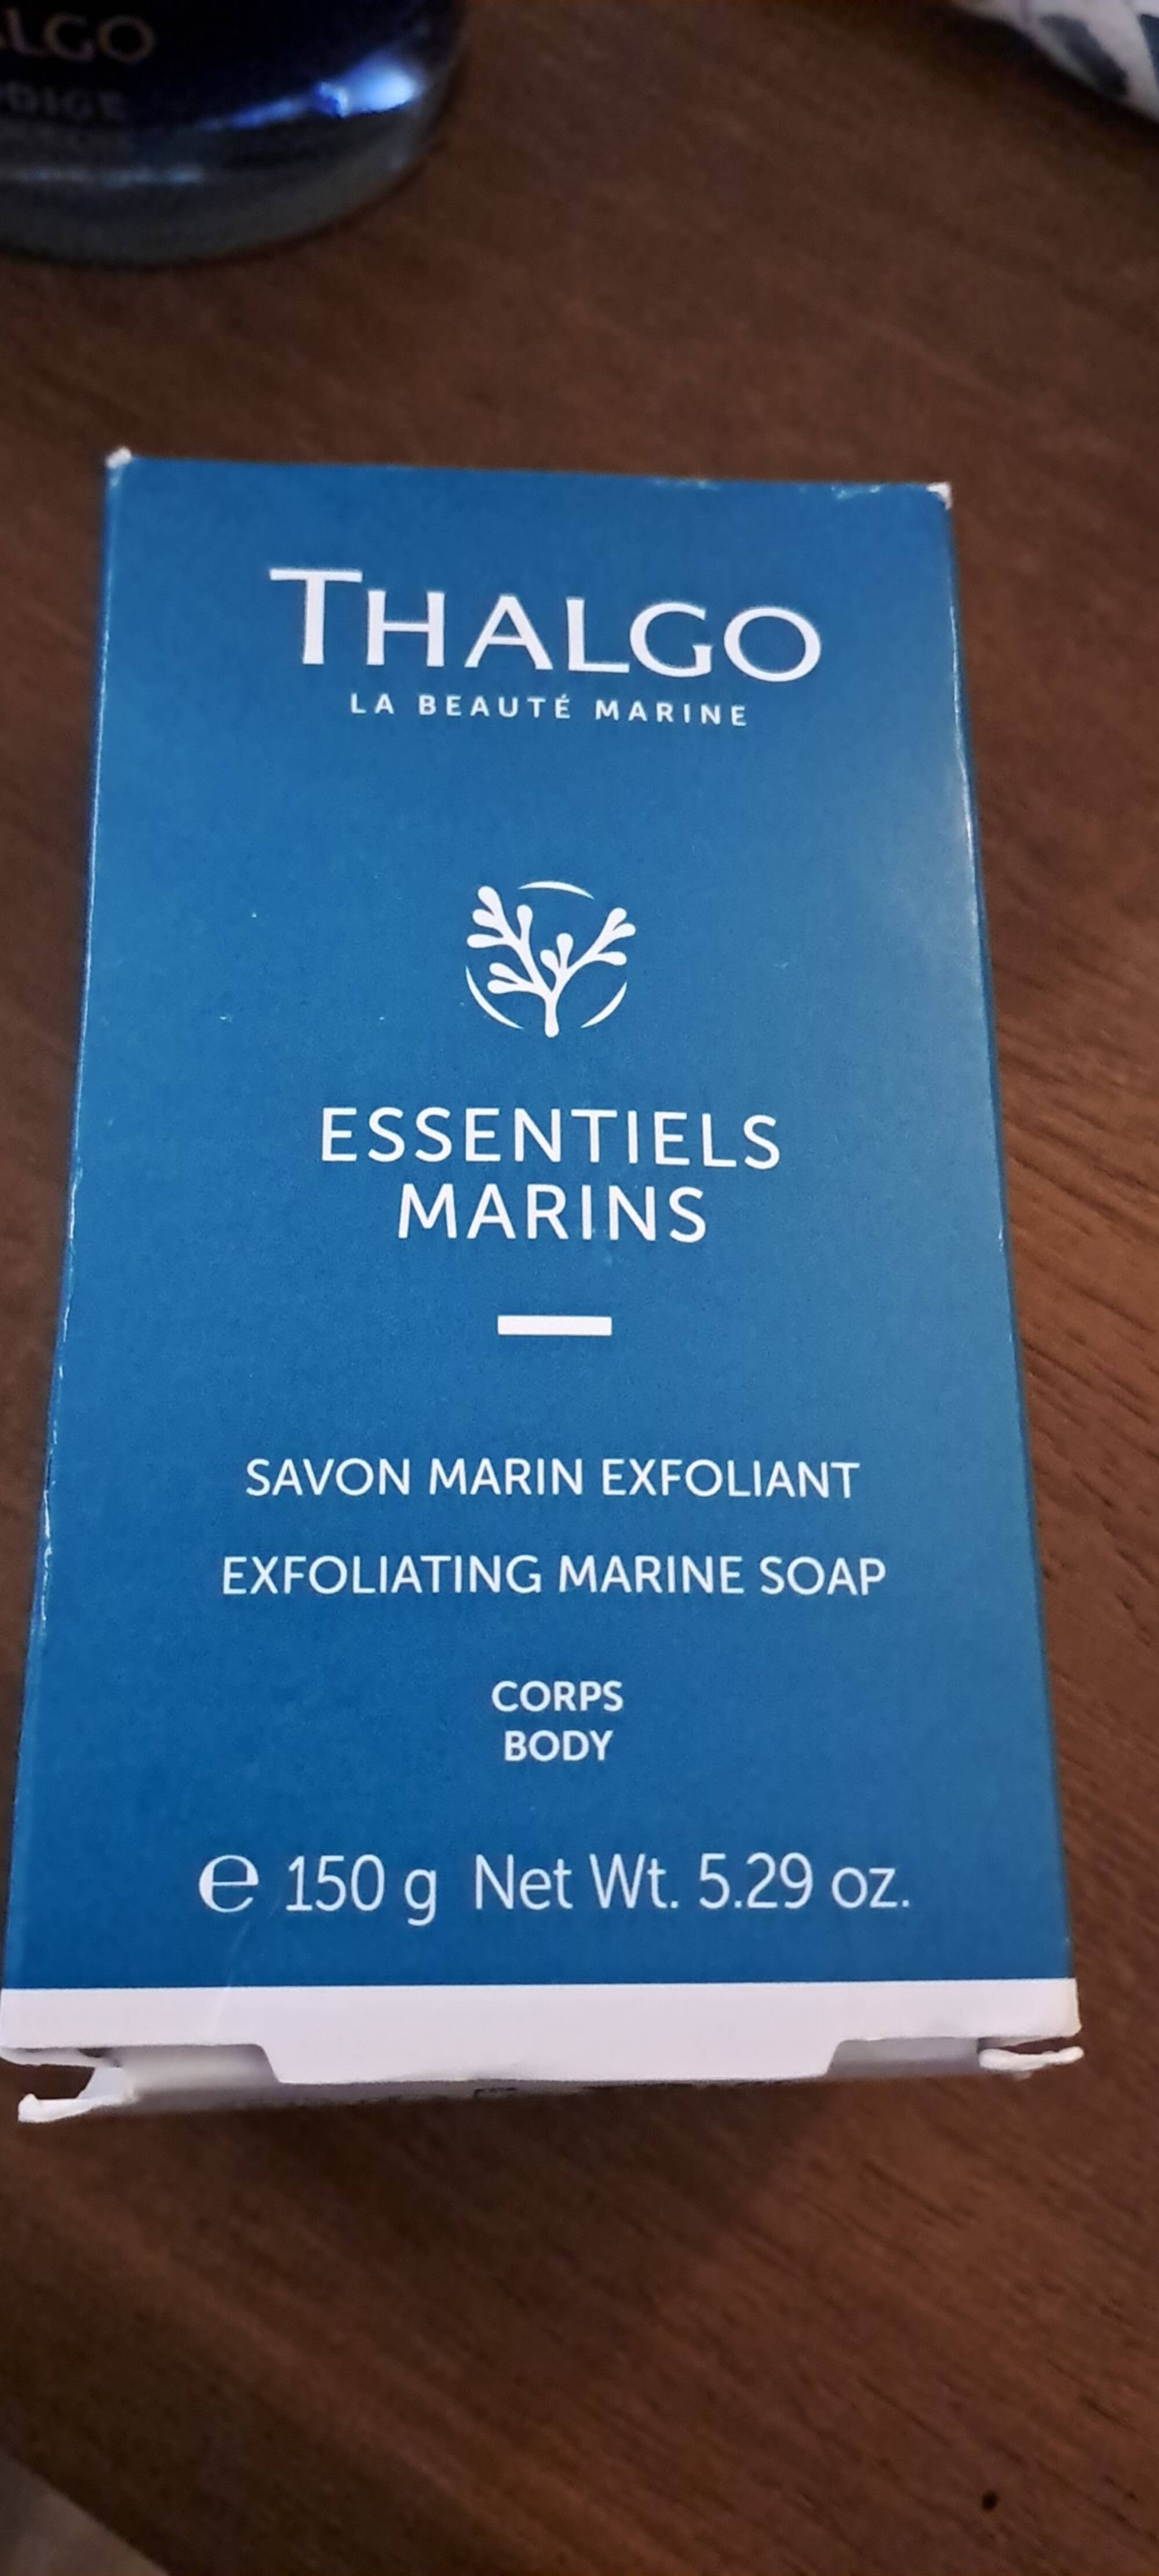 THALGO - Essentiels marins - Savon marin rexfoliant